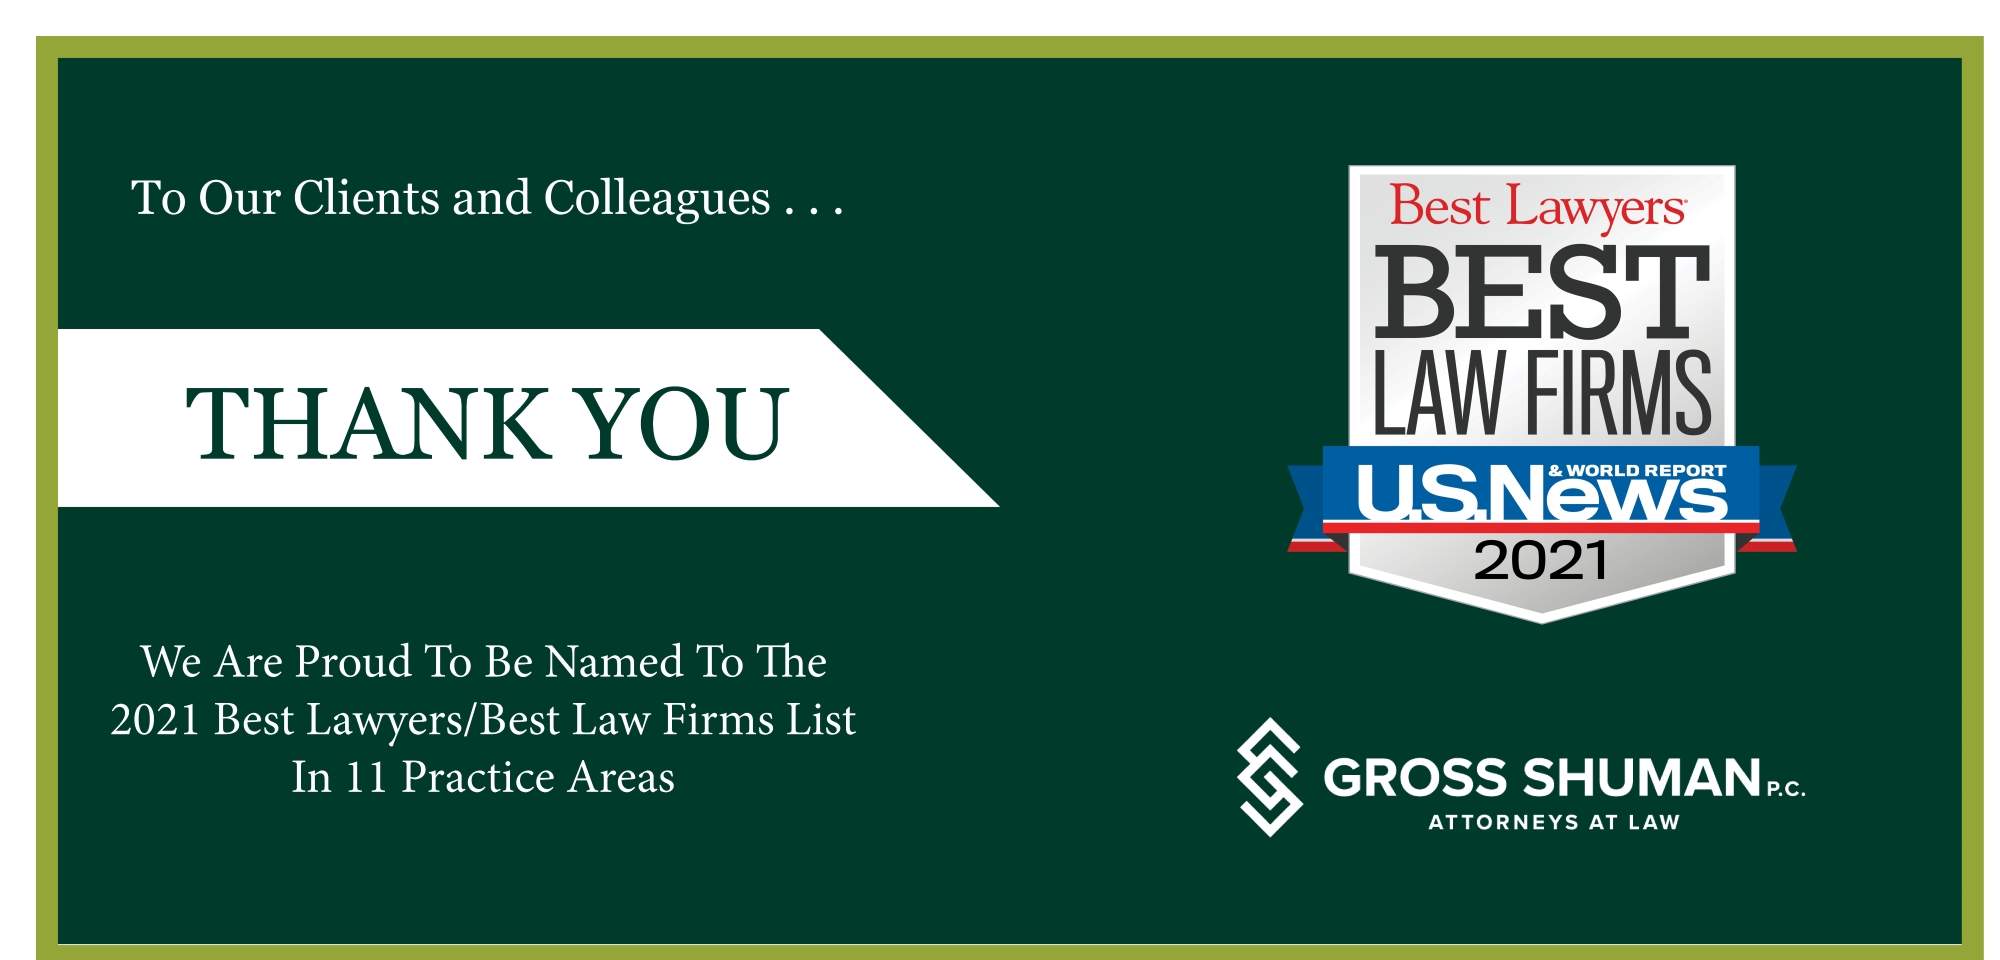 Gross Shuman Earns 11 Practice Rankings on 2021 U.S. News Best Law